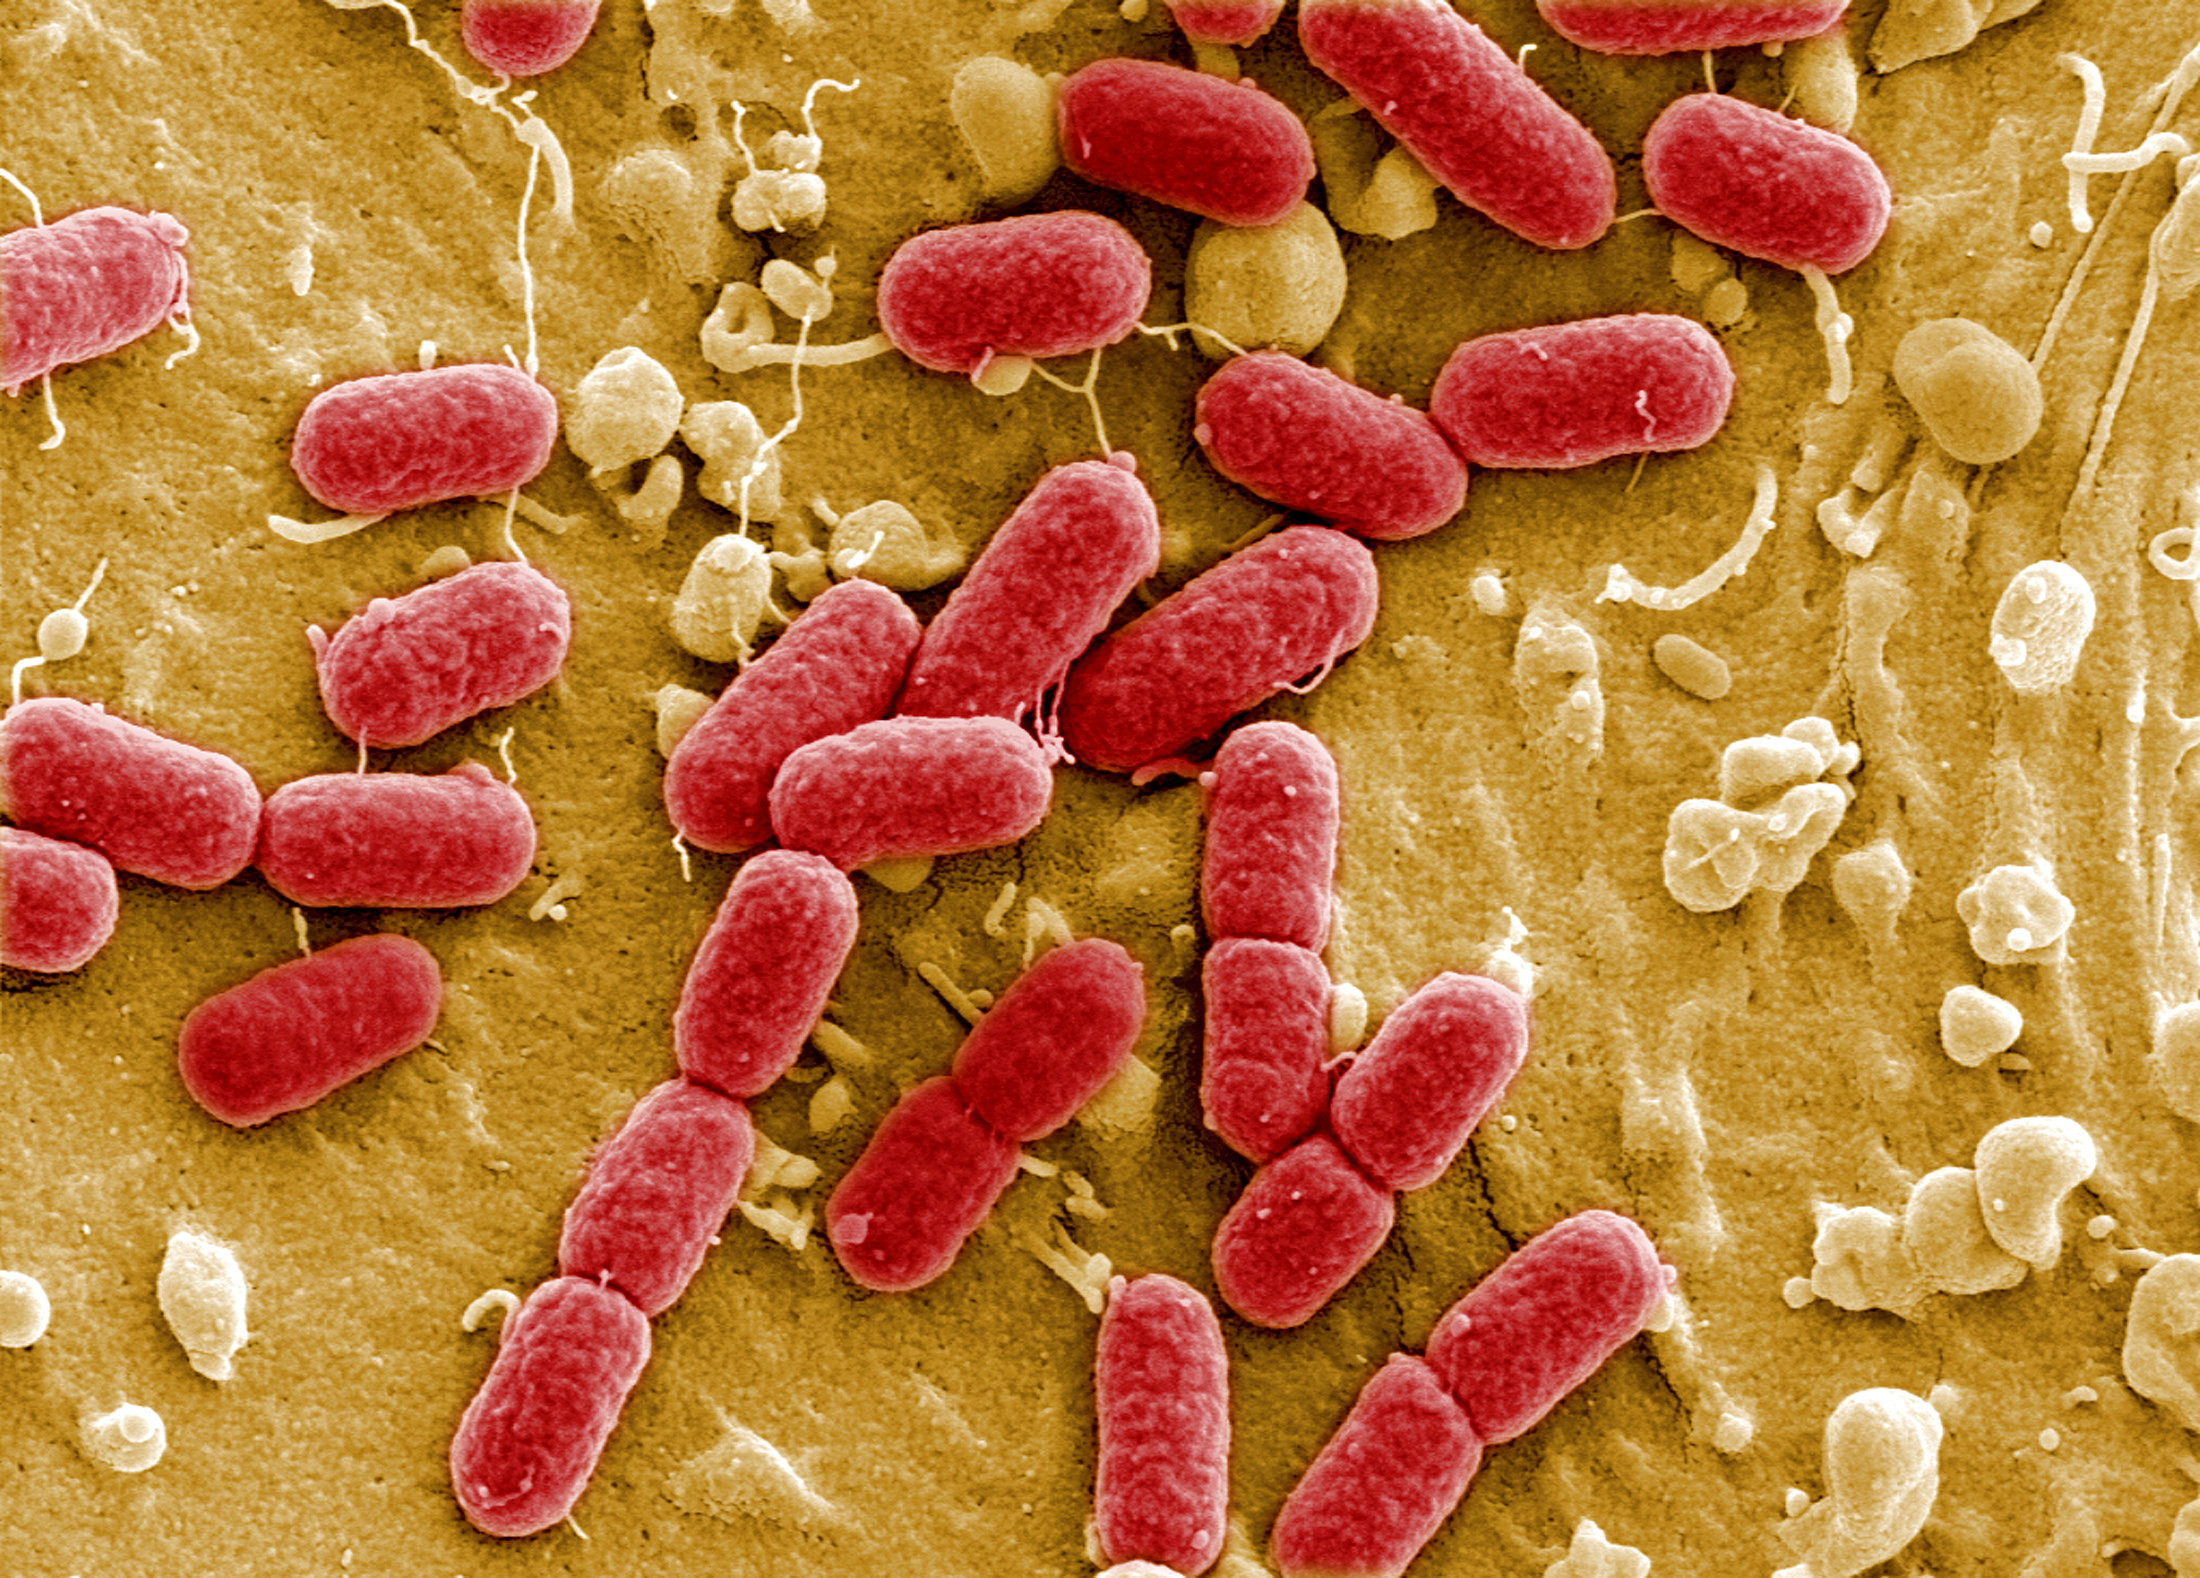 鱿鱼干制品的微生物(大肠杆菌群、大肠杆菌、金黄色葡萄球菌)的管制问题?